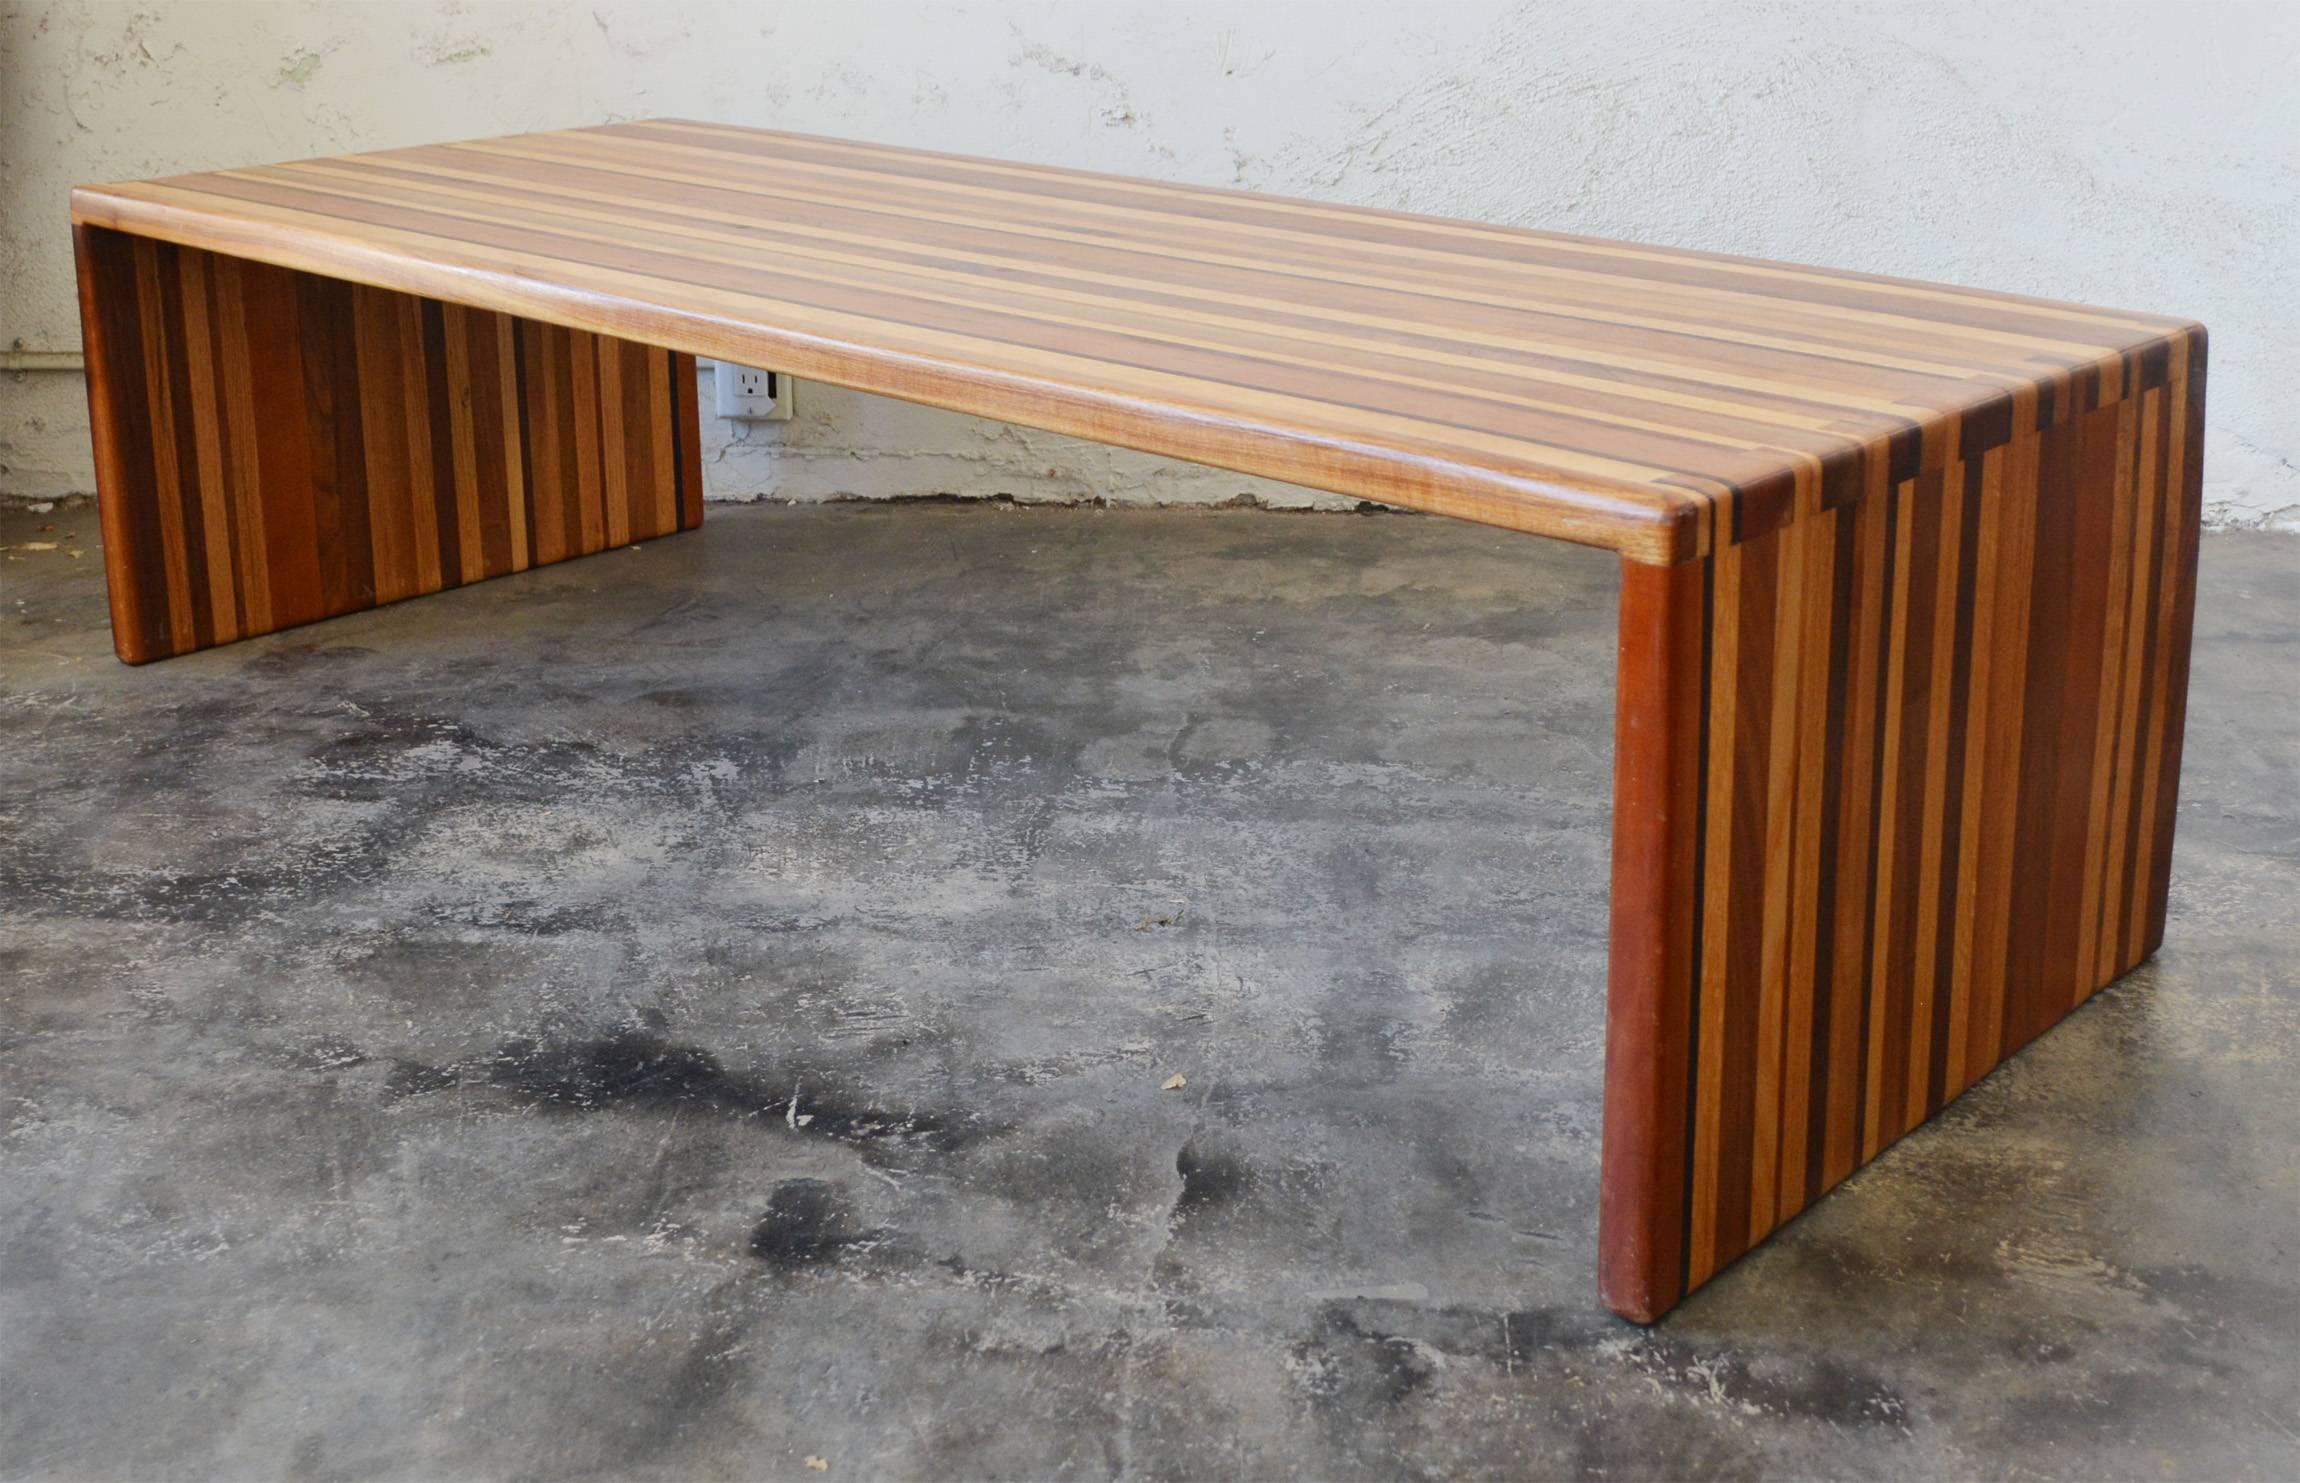 Table ou banc en bois mixte stratifié fabriqué en Studio. Cette table est composée d'au moins cinq variétés différentes de bois dur. Les extrémités sont reliées par des queues d'aronde. Il y a une rayure plus profonde sur un côté, le long de la